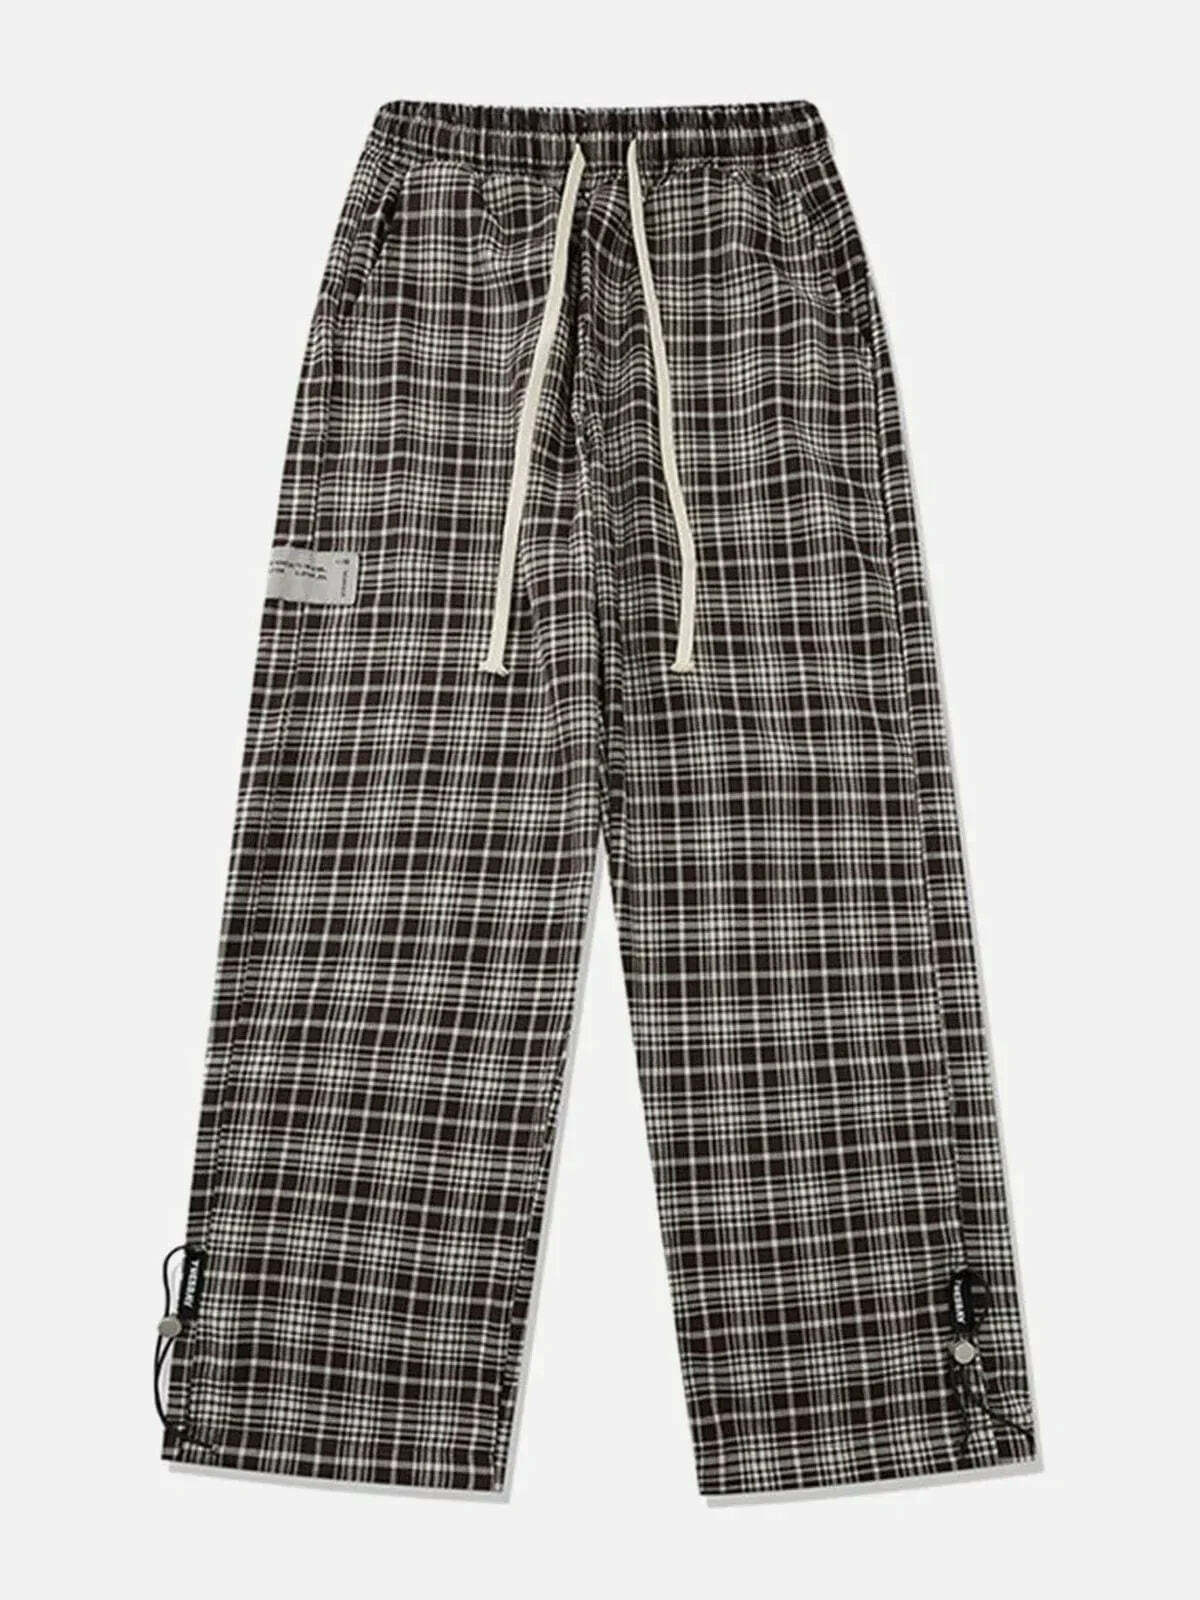 plaid cargo pants retro streetwear charm 2058